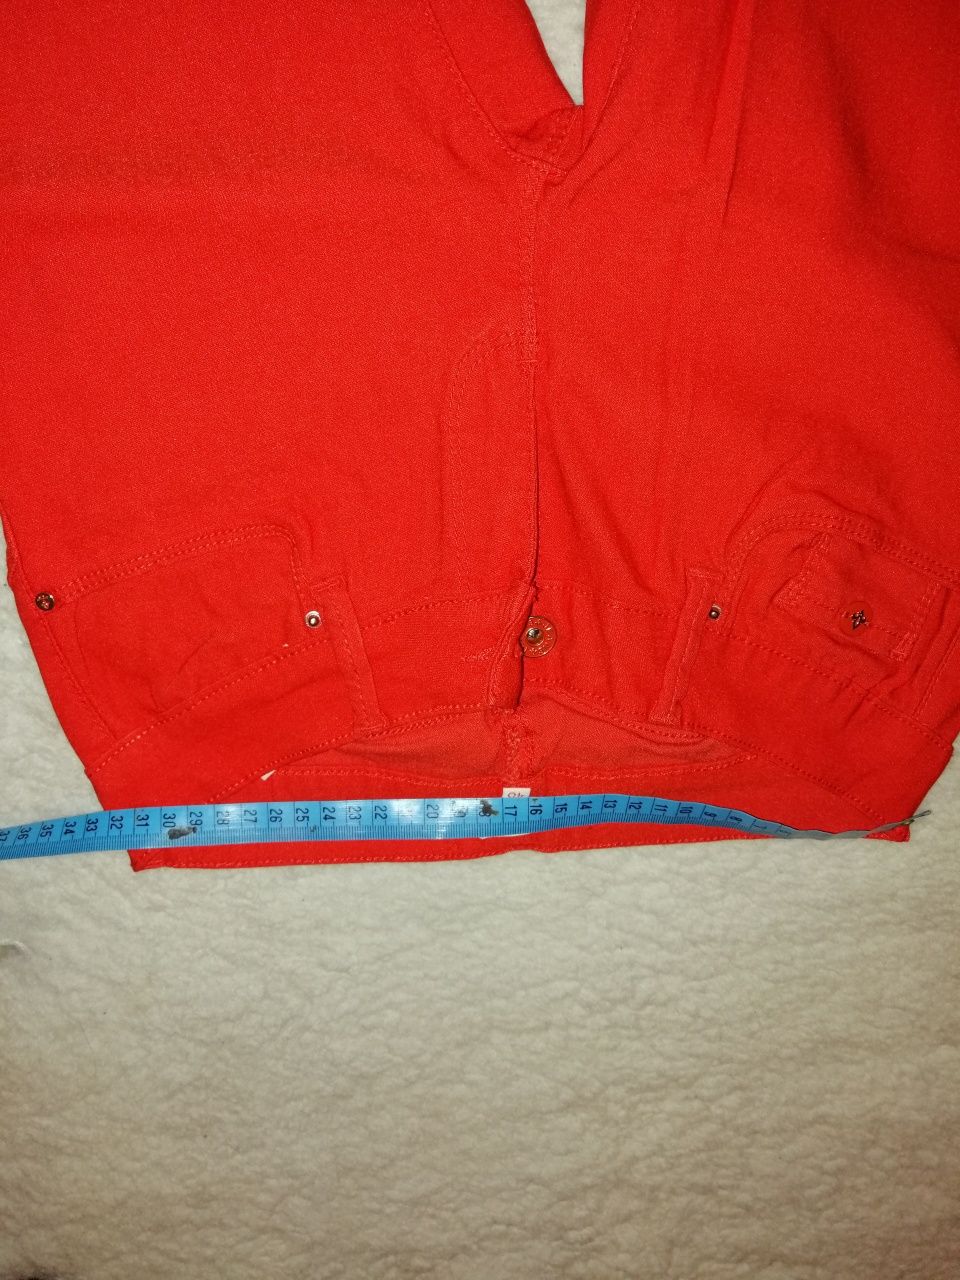 Spodnie czerwone r. 36